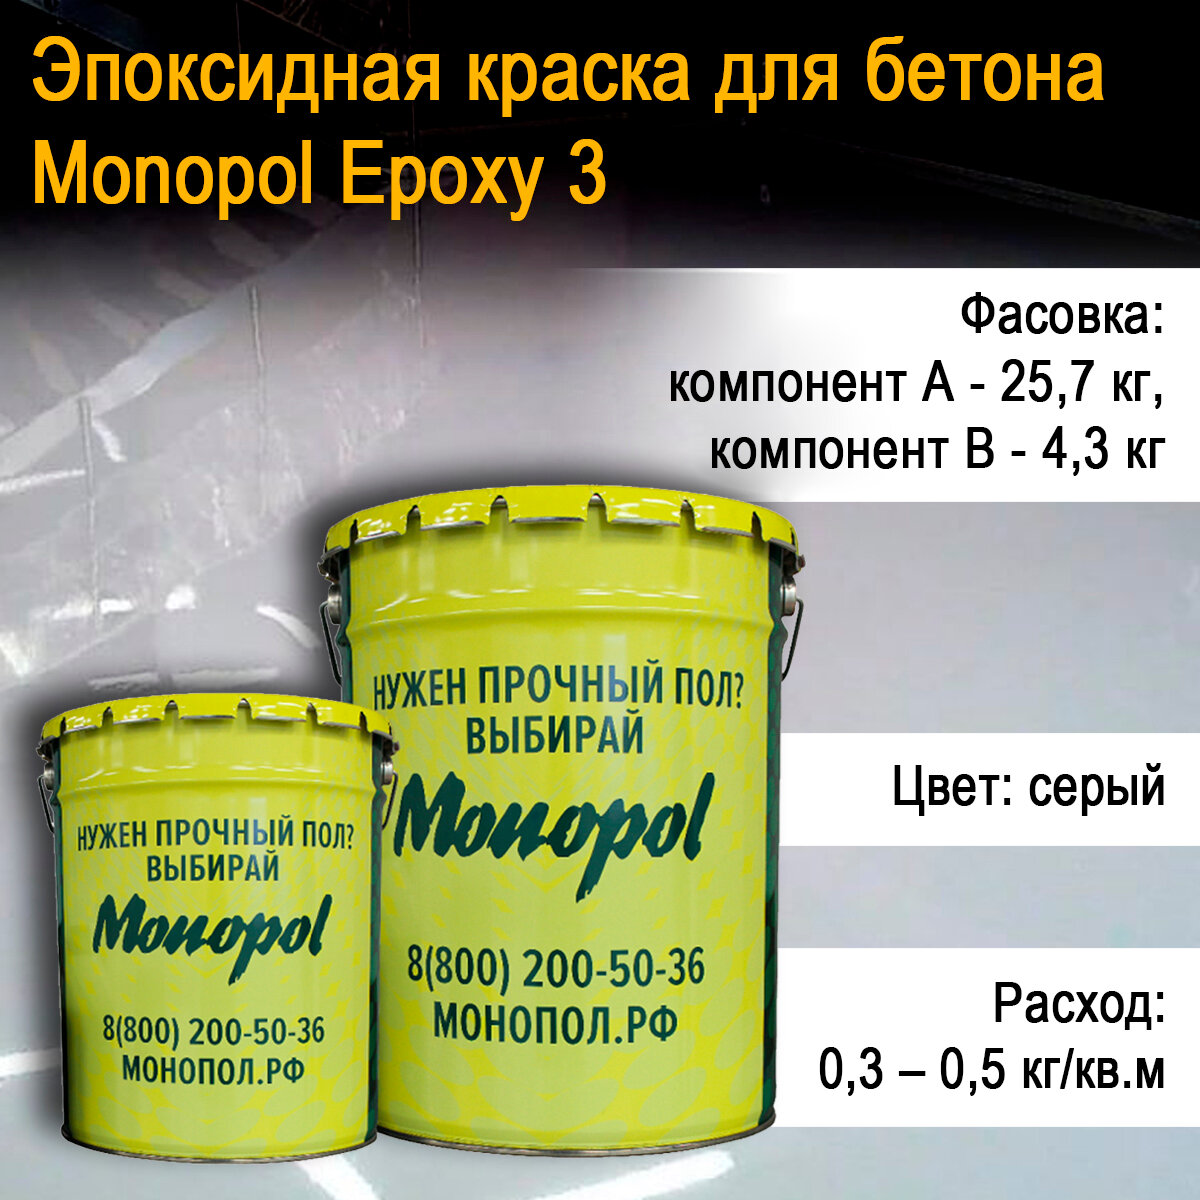       MONOPOL Epoxy 3 (: ;  30 )